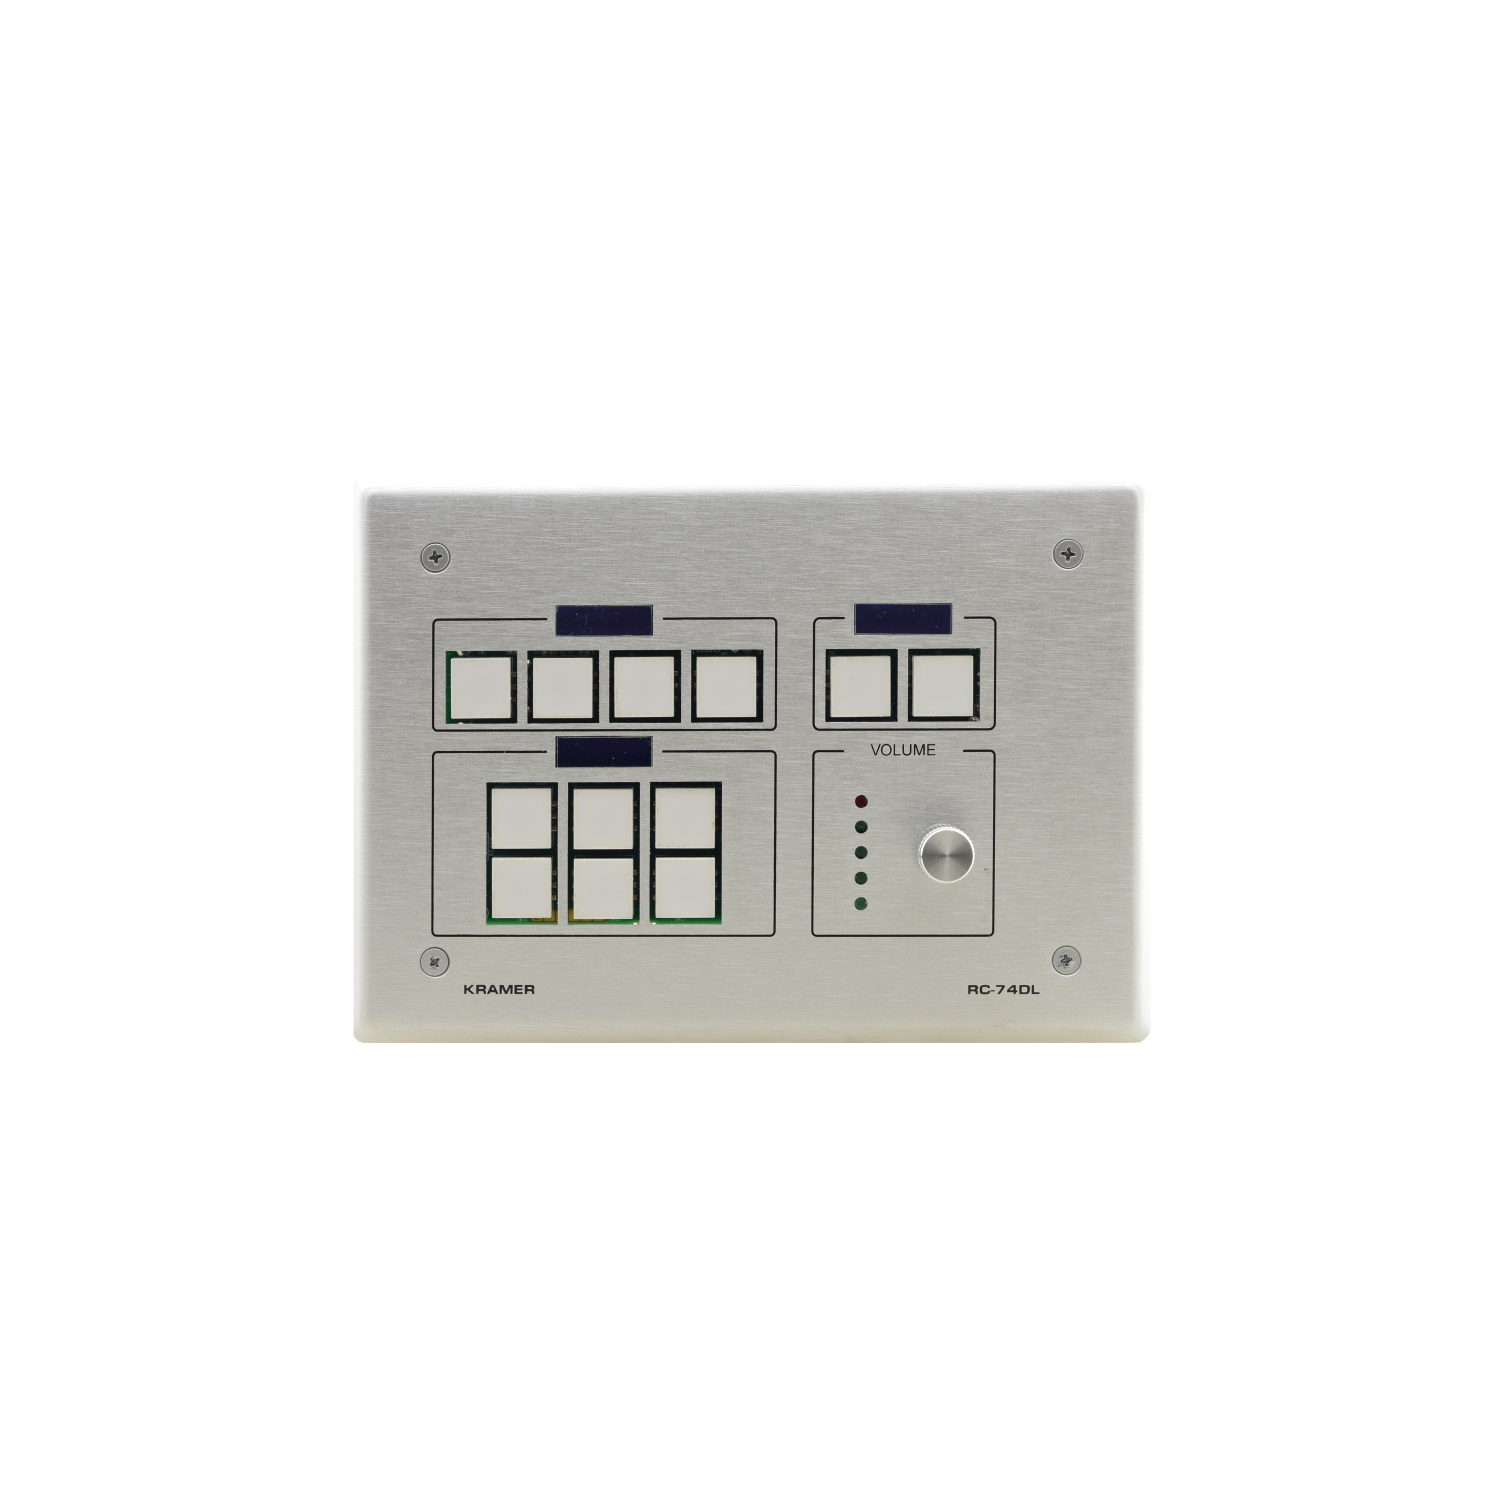 RC-74DL(W) Control keyboard white